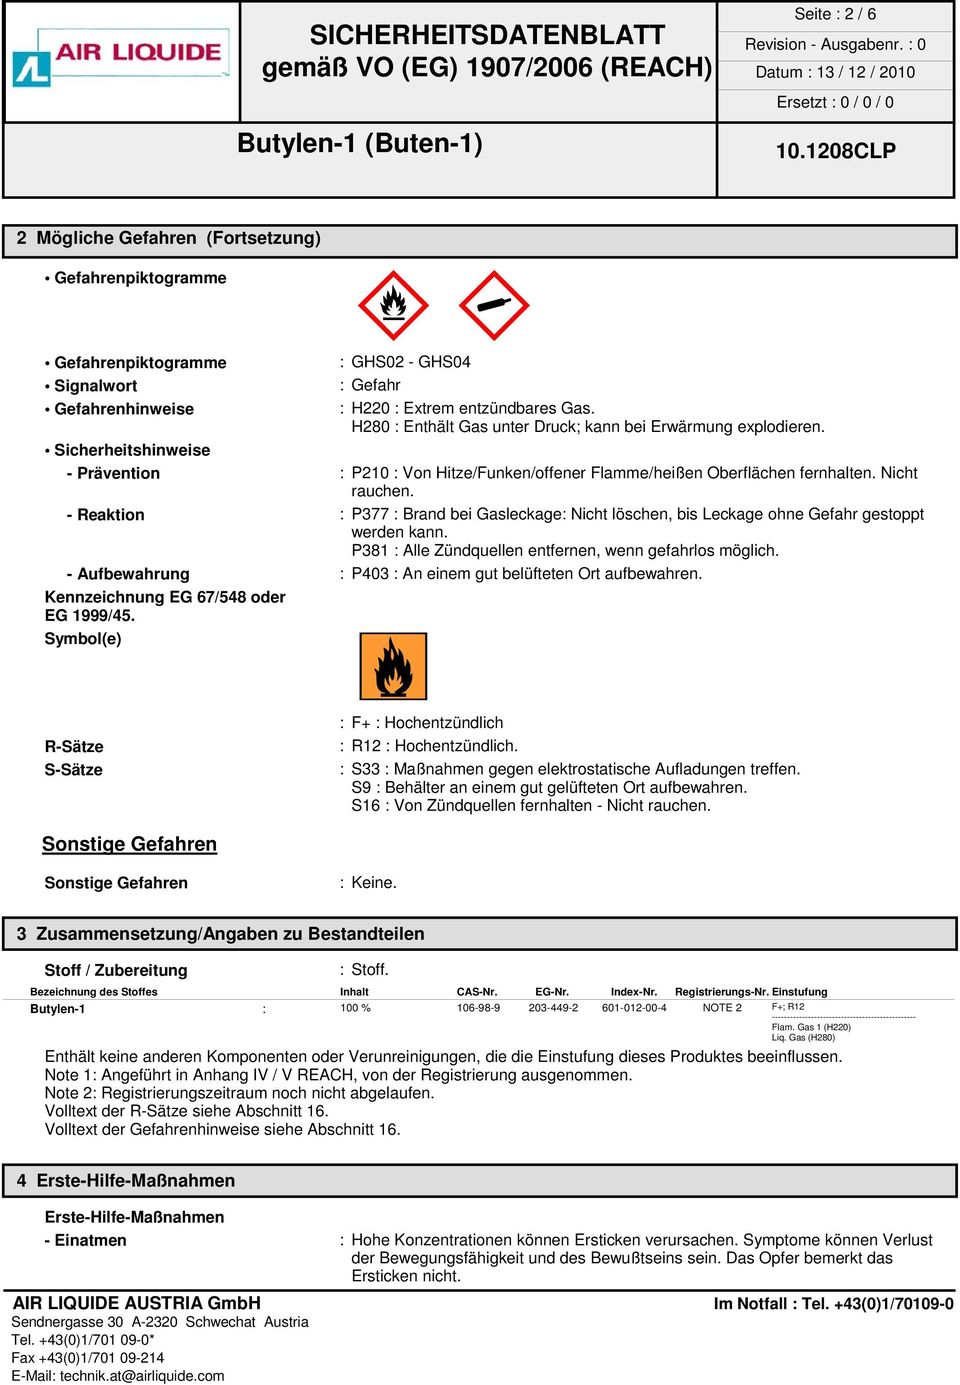 - Reaktion : P377 : Brand bei Gasleckage: Nicht löschen, bis Leckage ohne Gefahr gestoppt werden kann. P381 : Alle Zündquellen entfernen, wenn gefahrlos möglich.